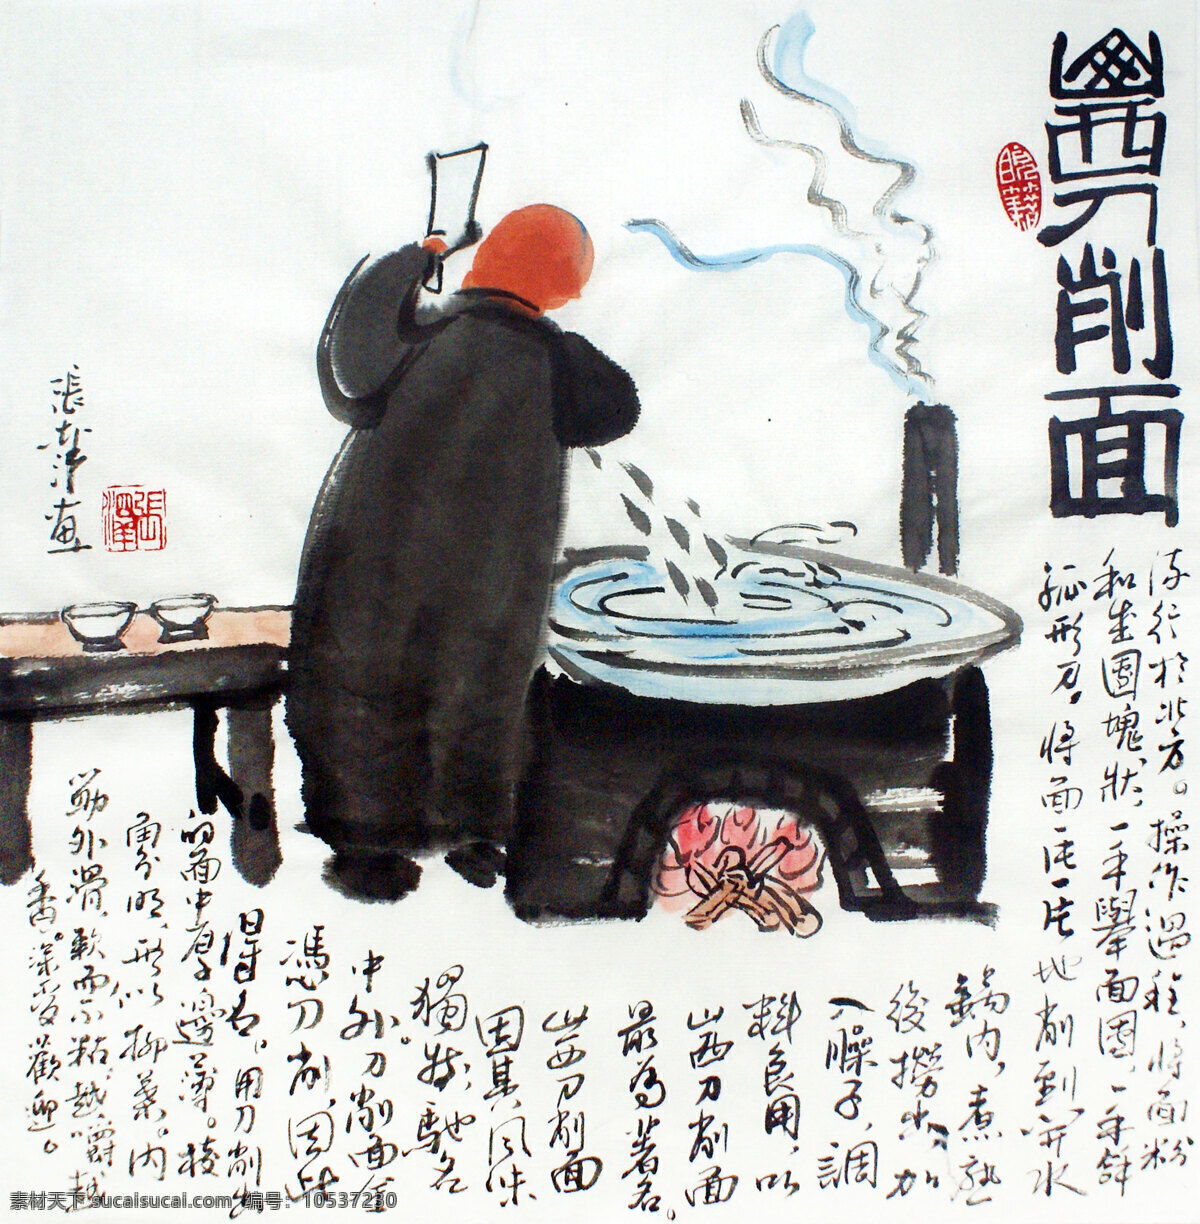 山西刀削面 苗条 十大面条 中国面条 美食 书画专辑 文化艺术 绘画书法